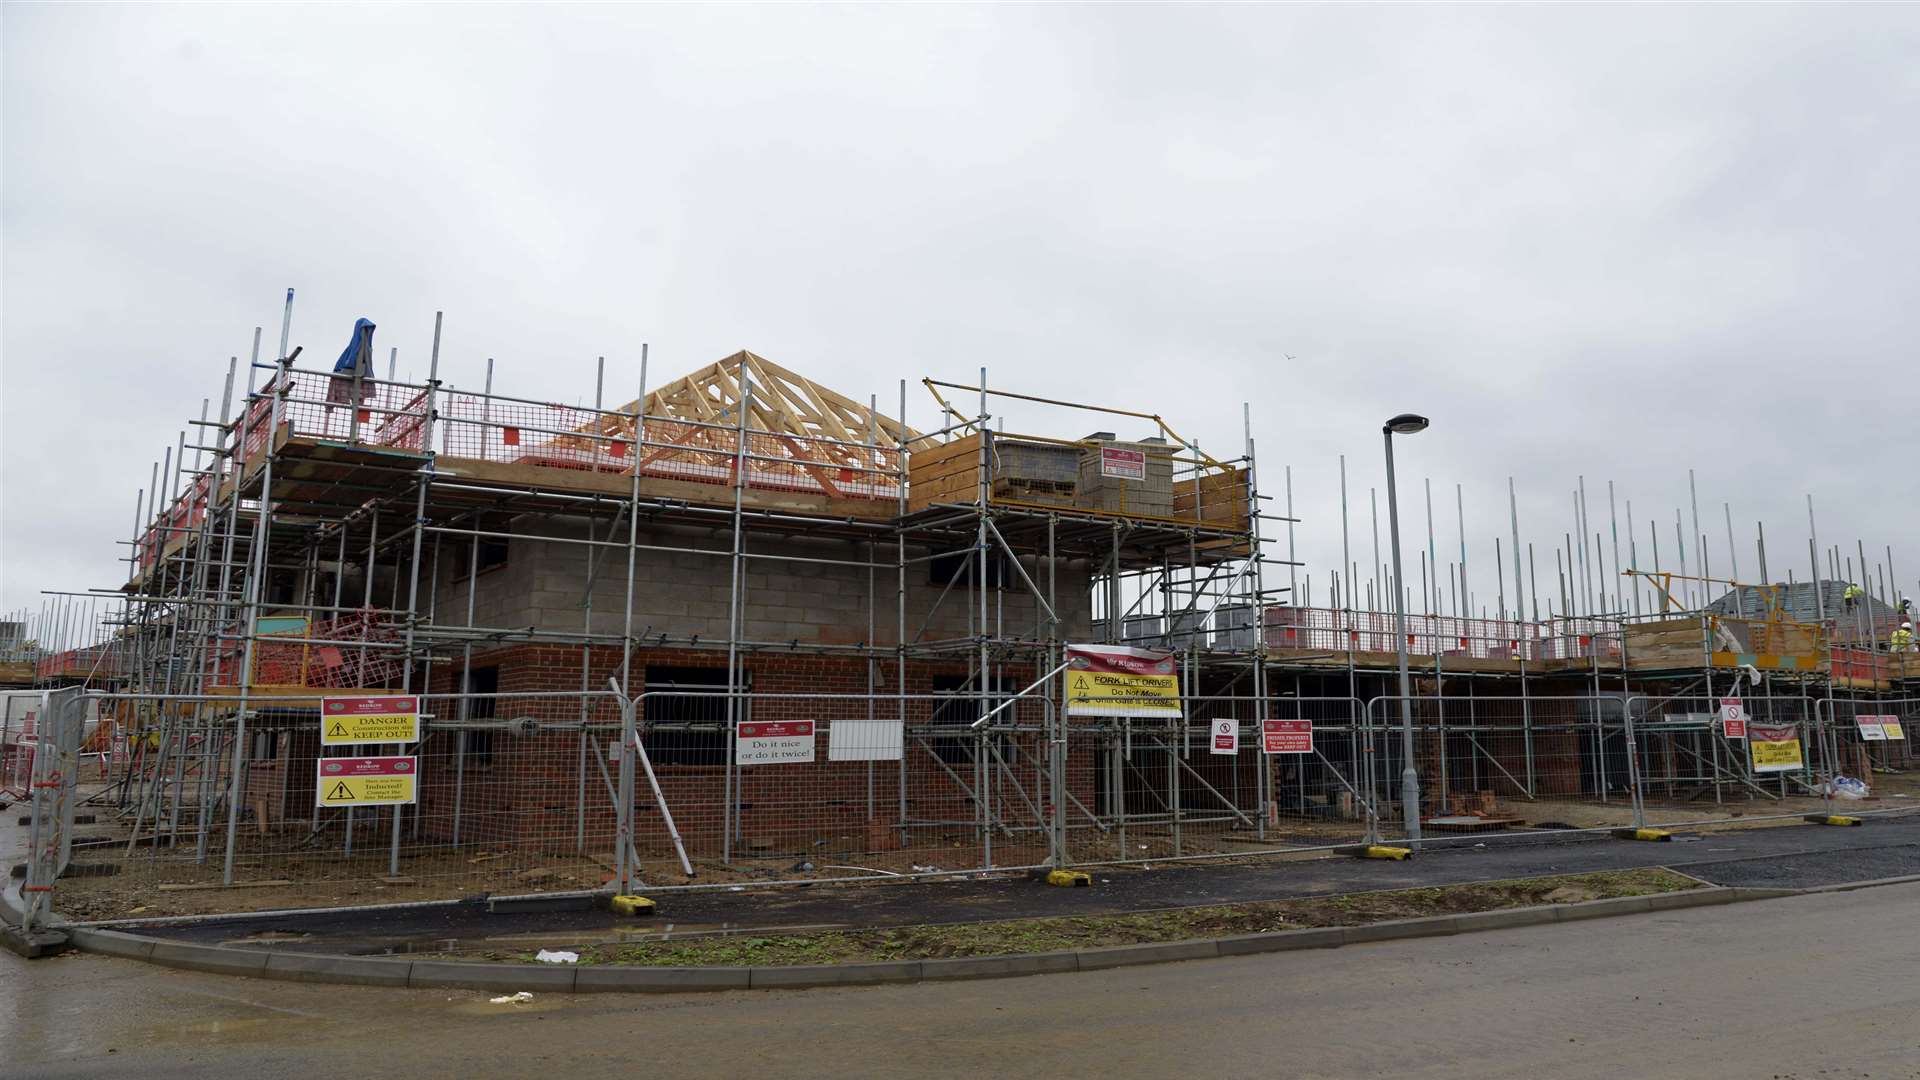 Building work underway at Archers Park, Sittingbourne's newest housing development